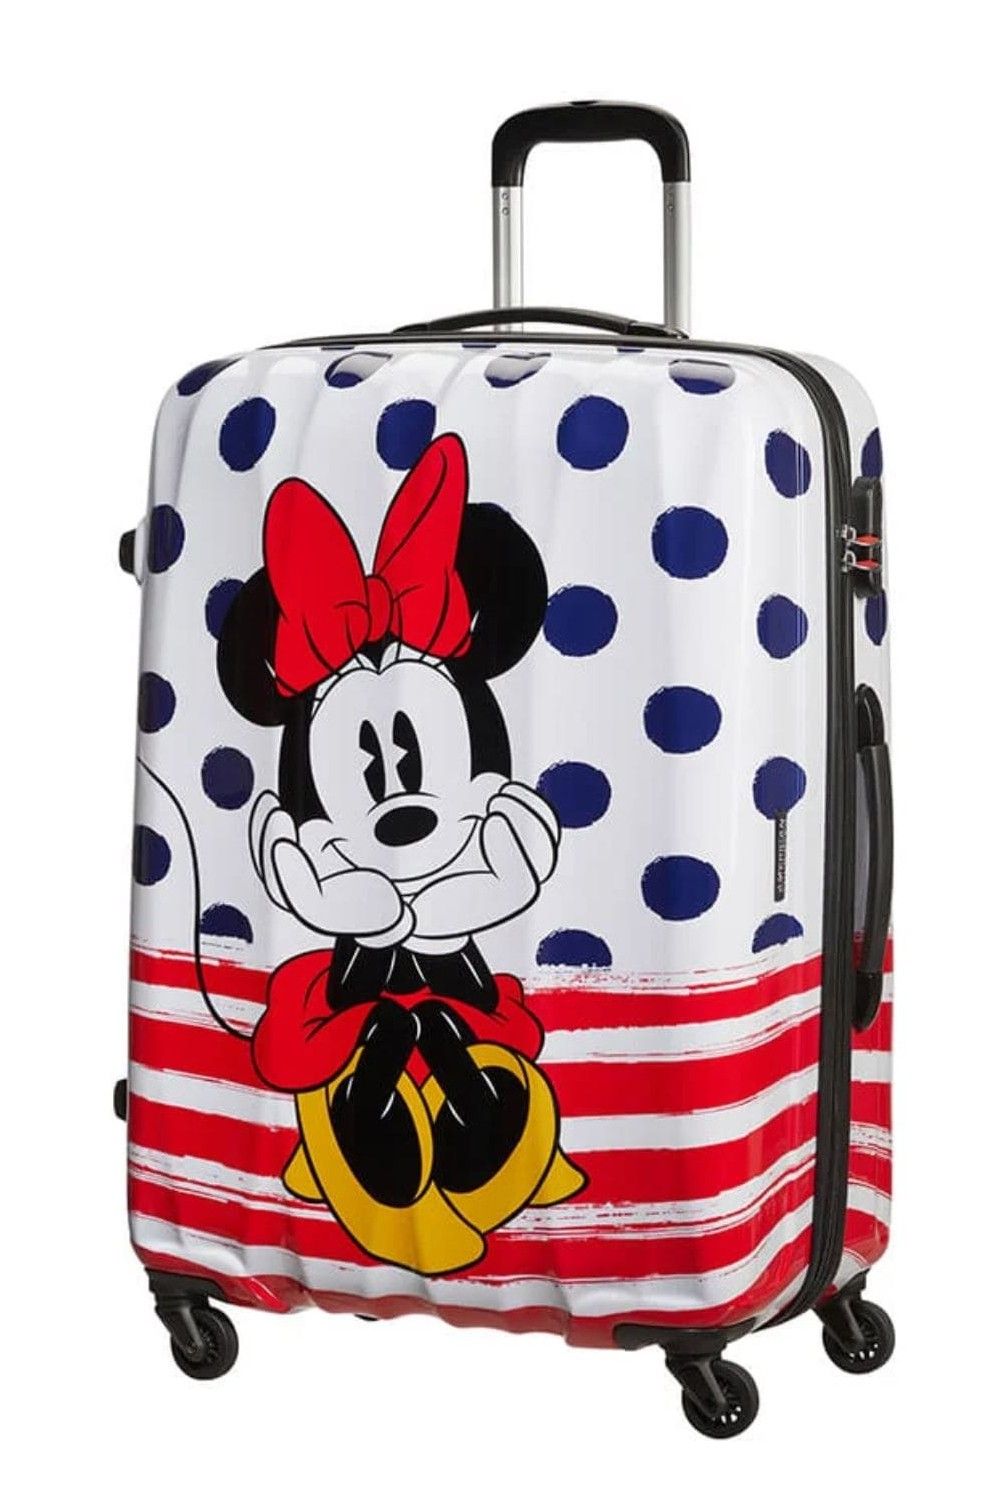 AT children's suitcase Minnie Blue Dot 65 cm 52 Liter